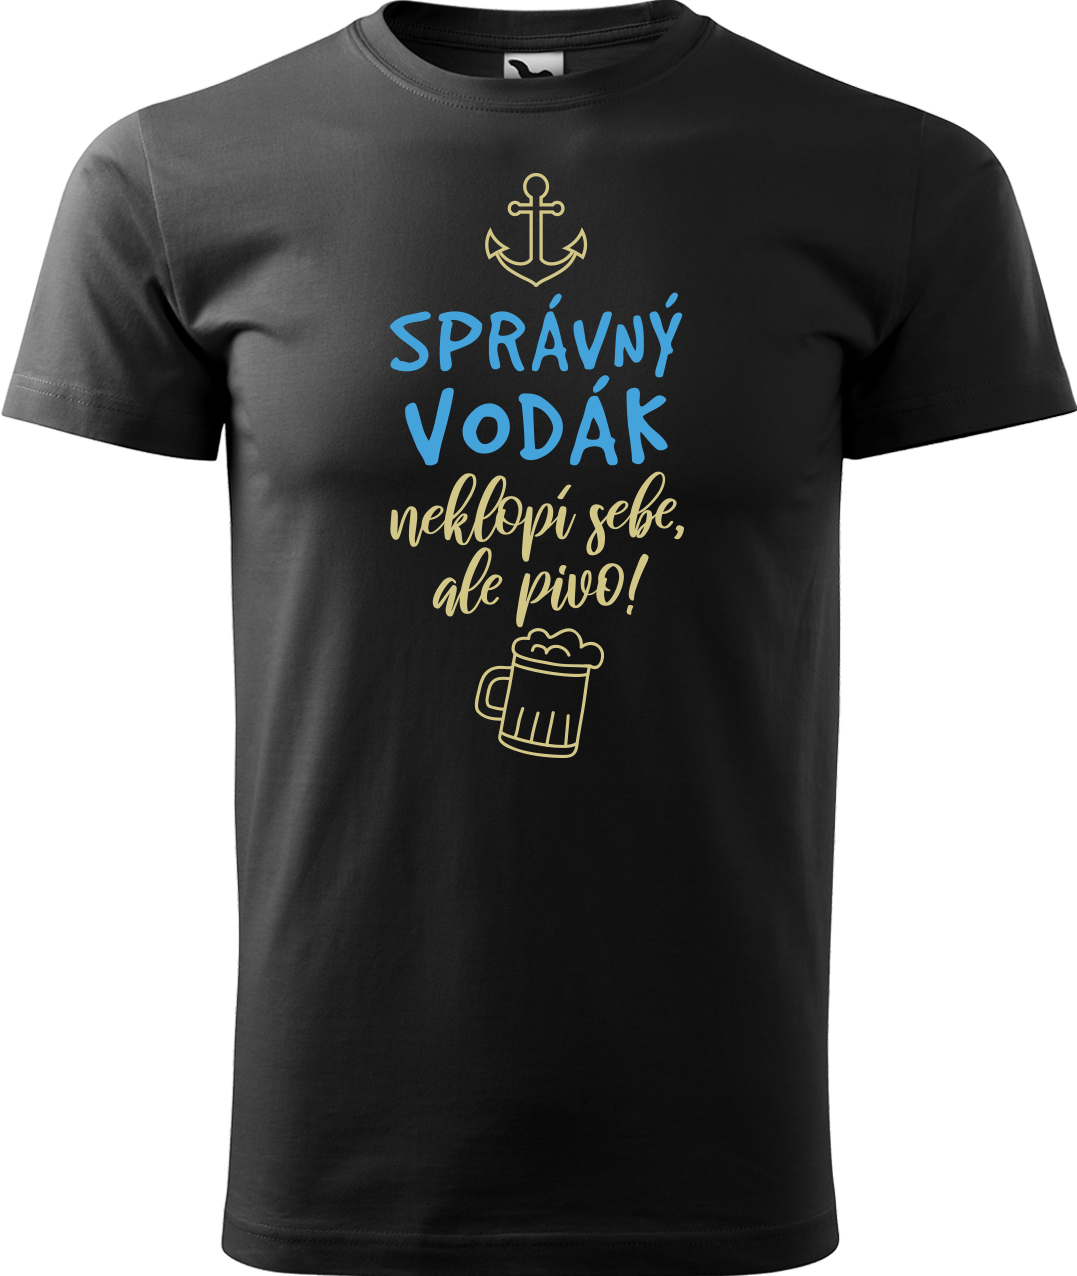 Pánské vodácké tričko - Správný vodák Velikost: XL, Barva: Černá (01)